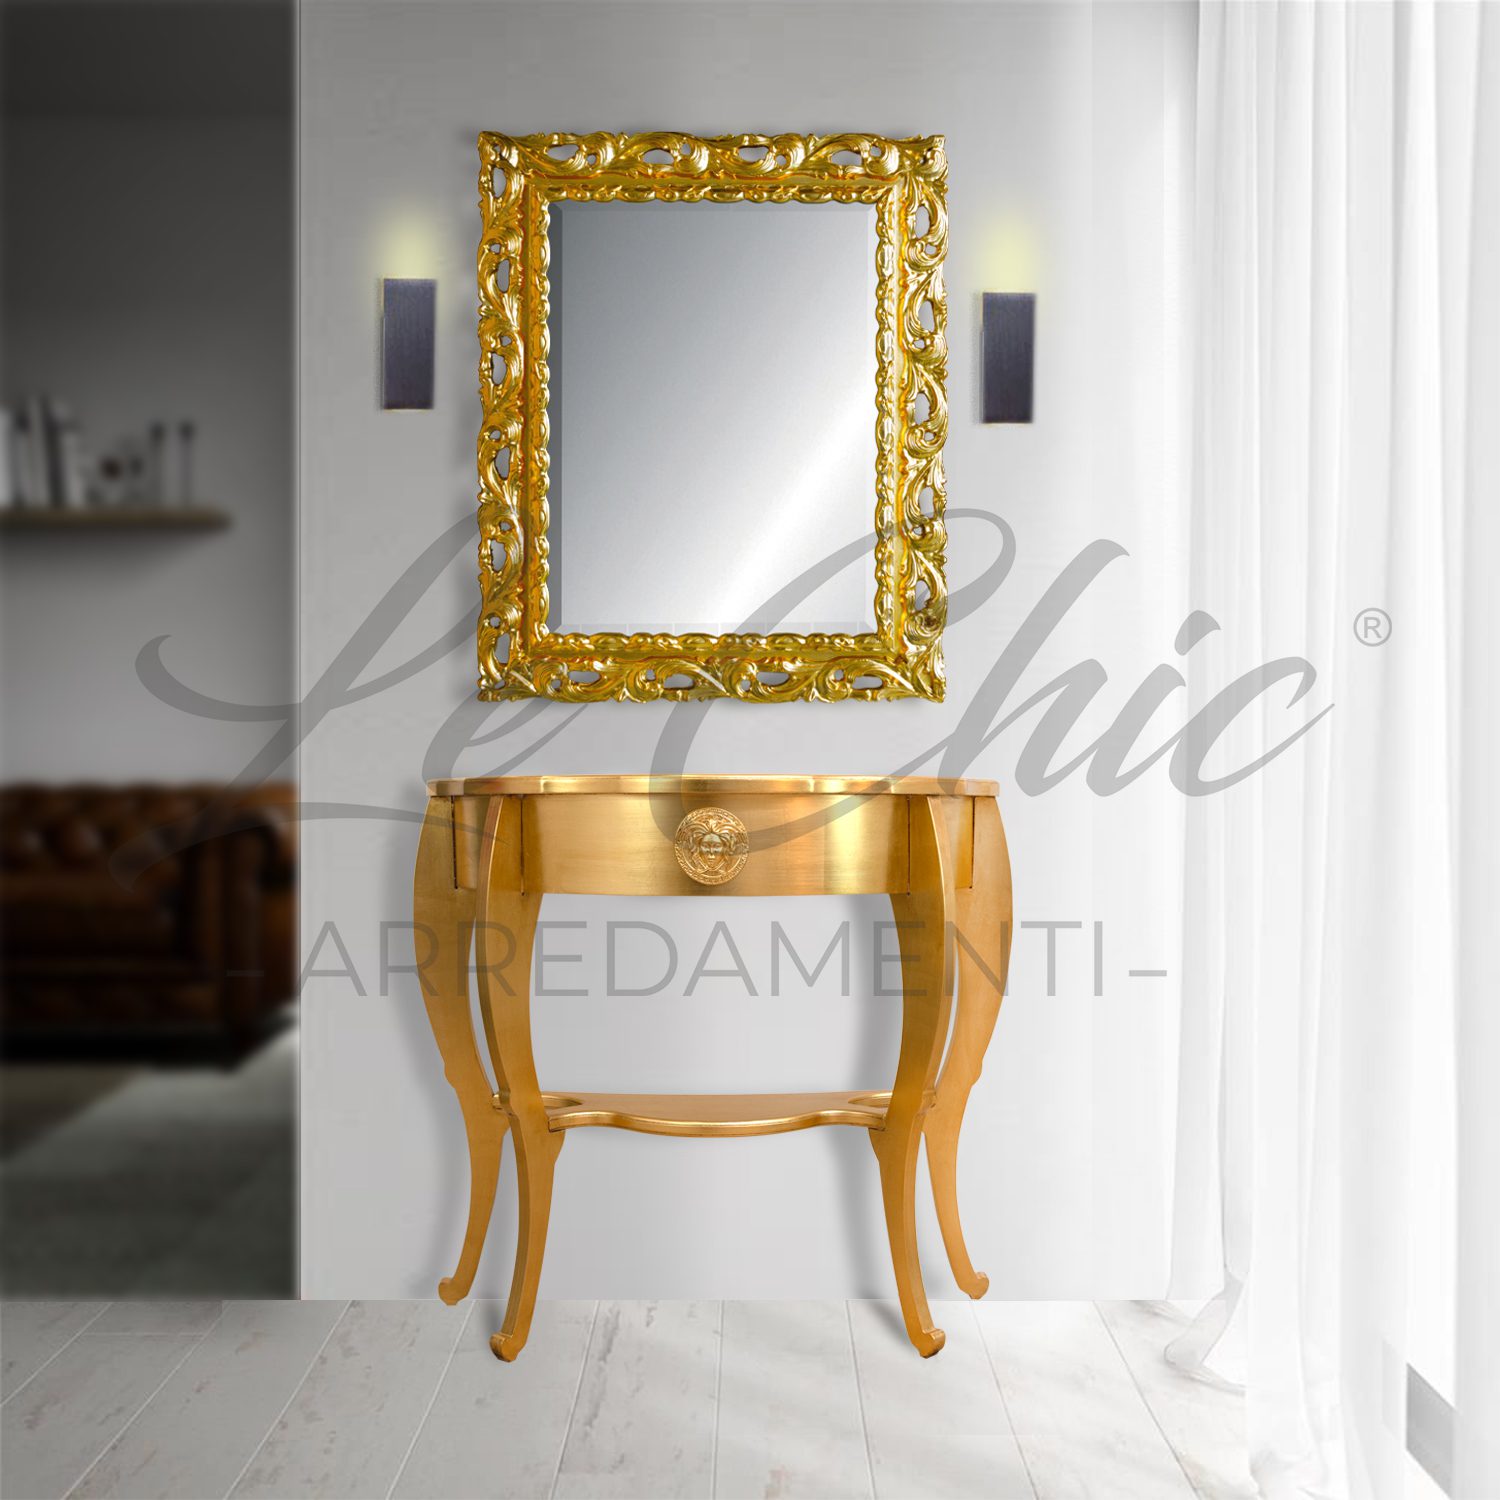 Consolle stile barocco oro con specchiera - Le Chic Arredamenti